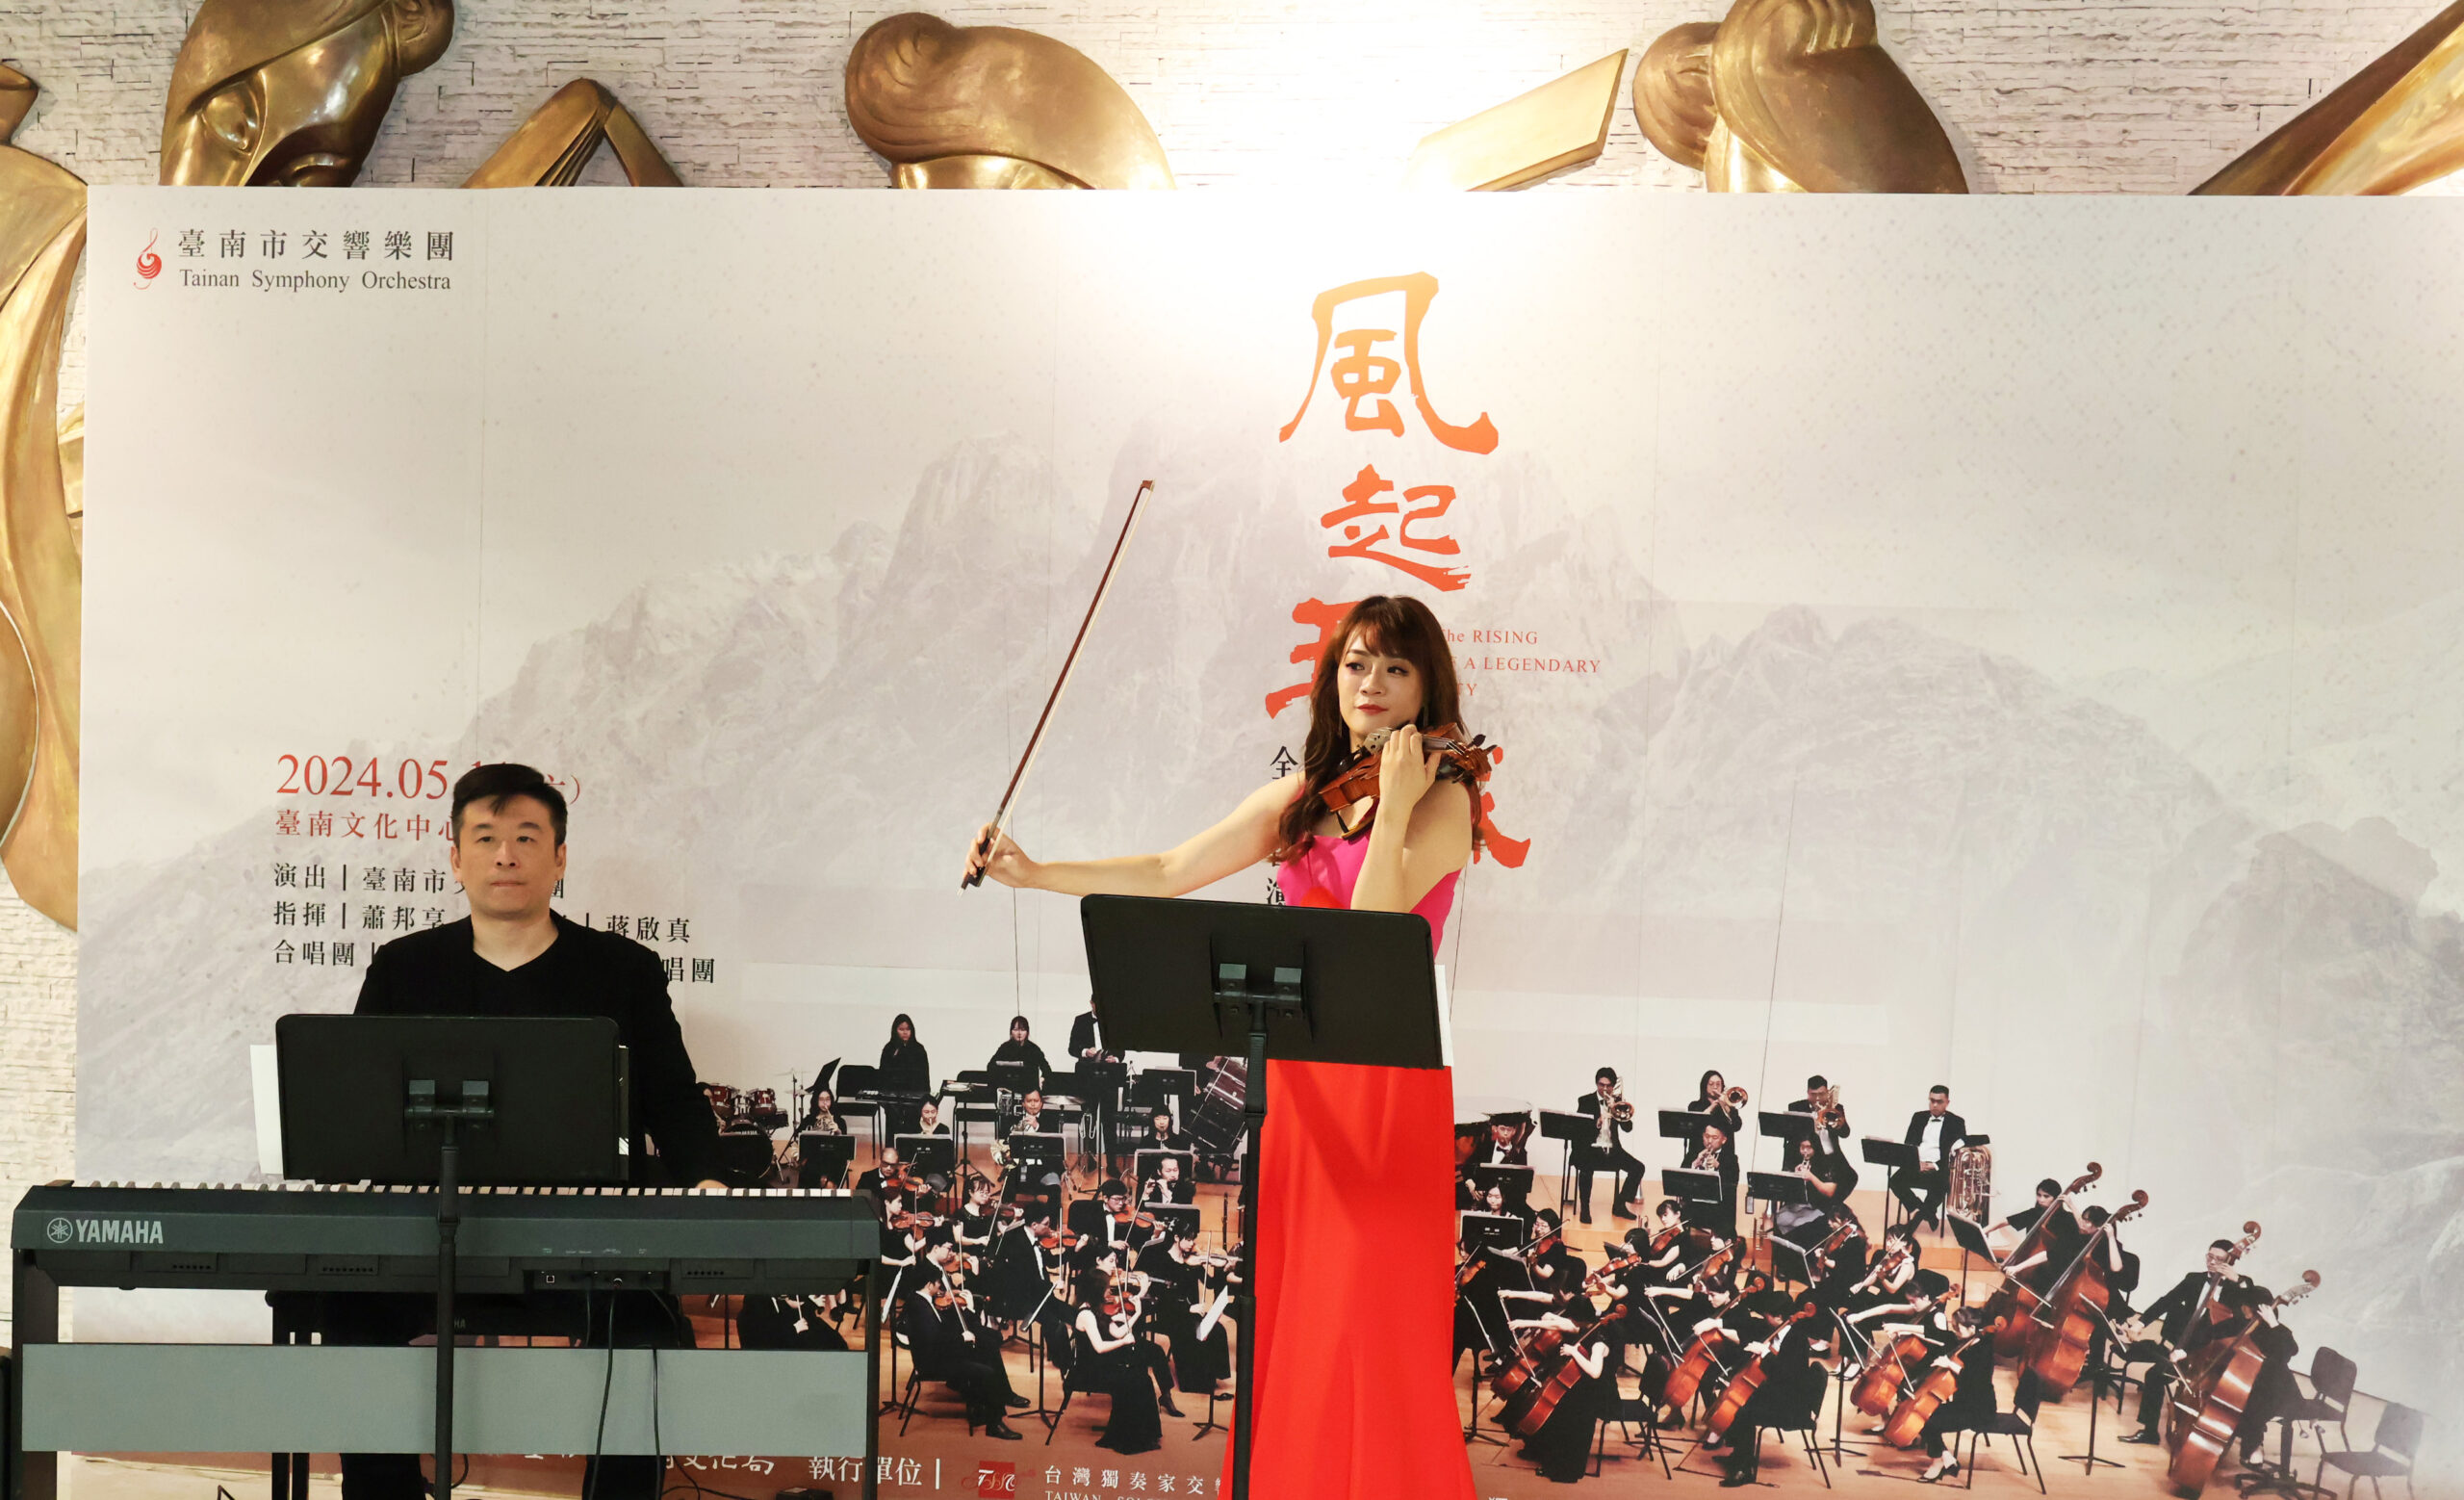 《風起王城》交響四部曲將於本周末5/11由臺南市交響樂團在臺南文化中心演藝廳舉行